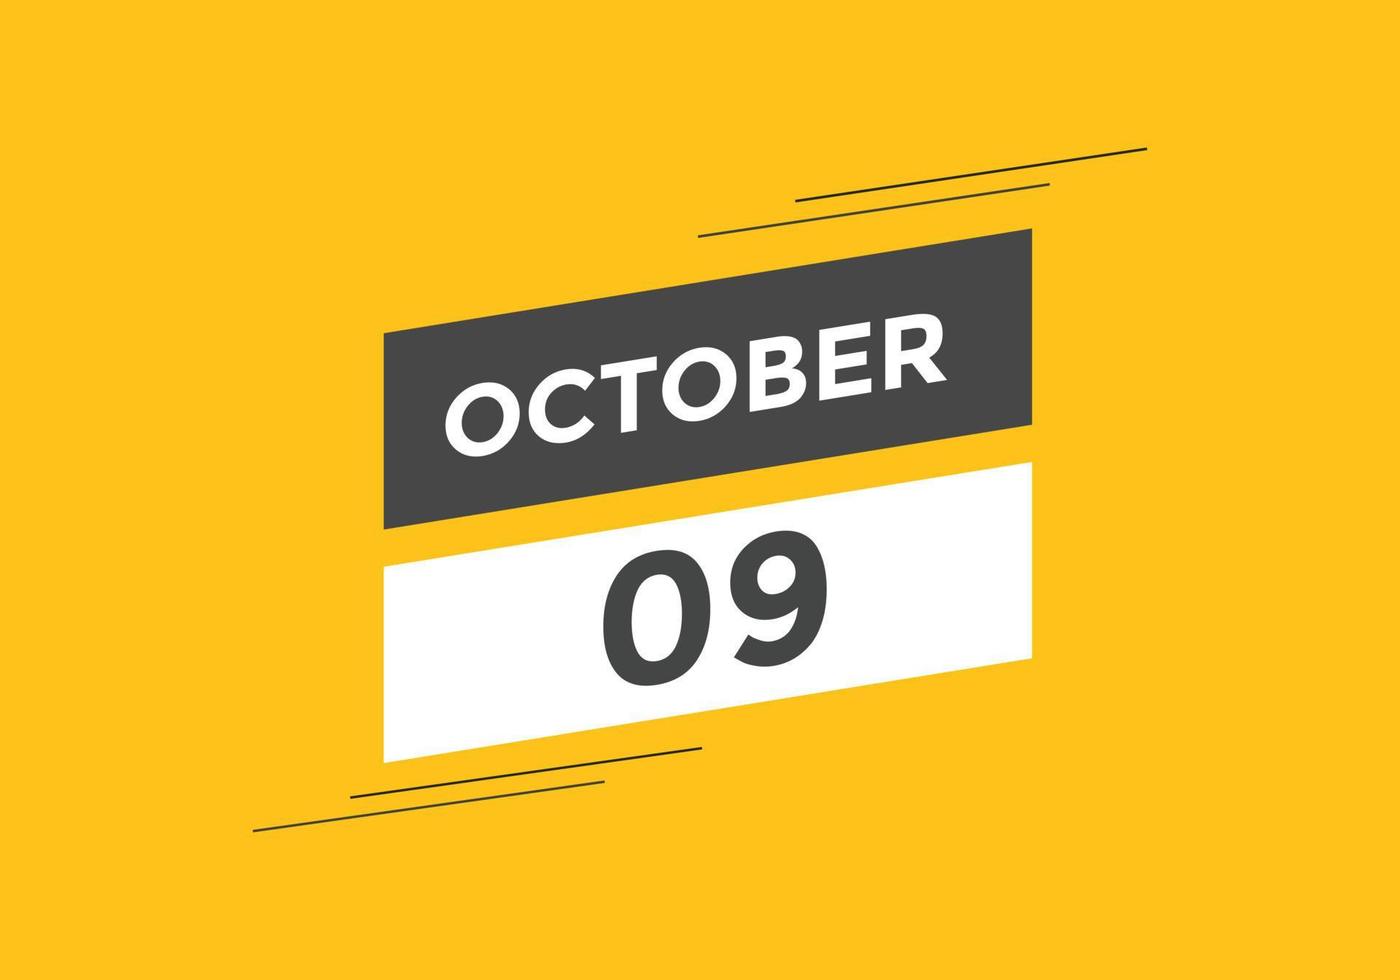 Recordatorio del calendario del 9 de octubre. Plantilla de icono de calendario diario del 9 de octubre. plantilla de diseño de icono de calendario 9 de octubre. ilustración vectorial vector